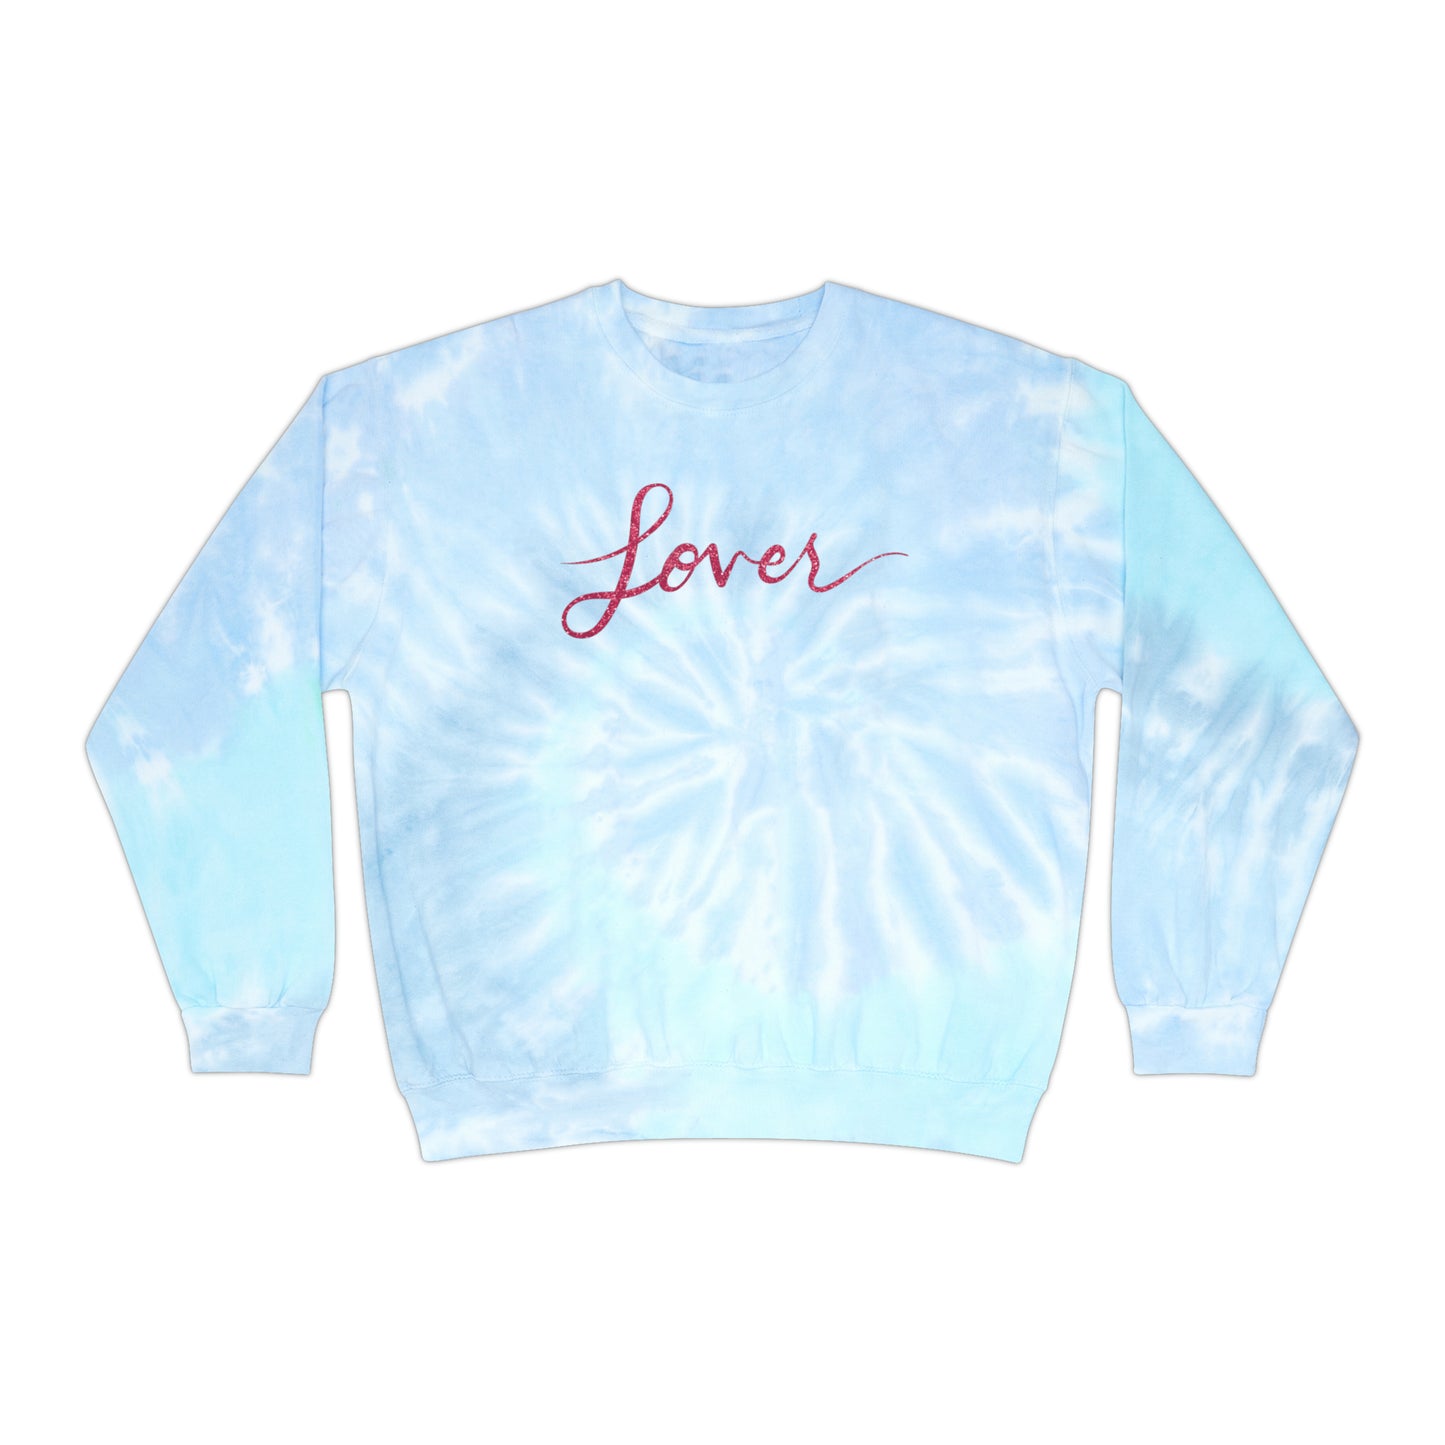 Lover Tie-Dye Sweatshirt